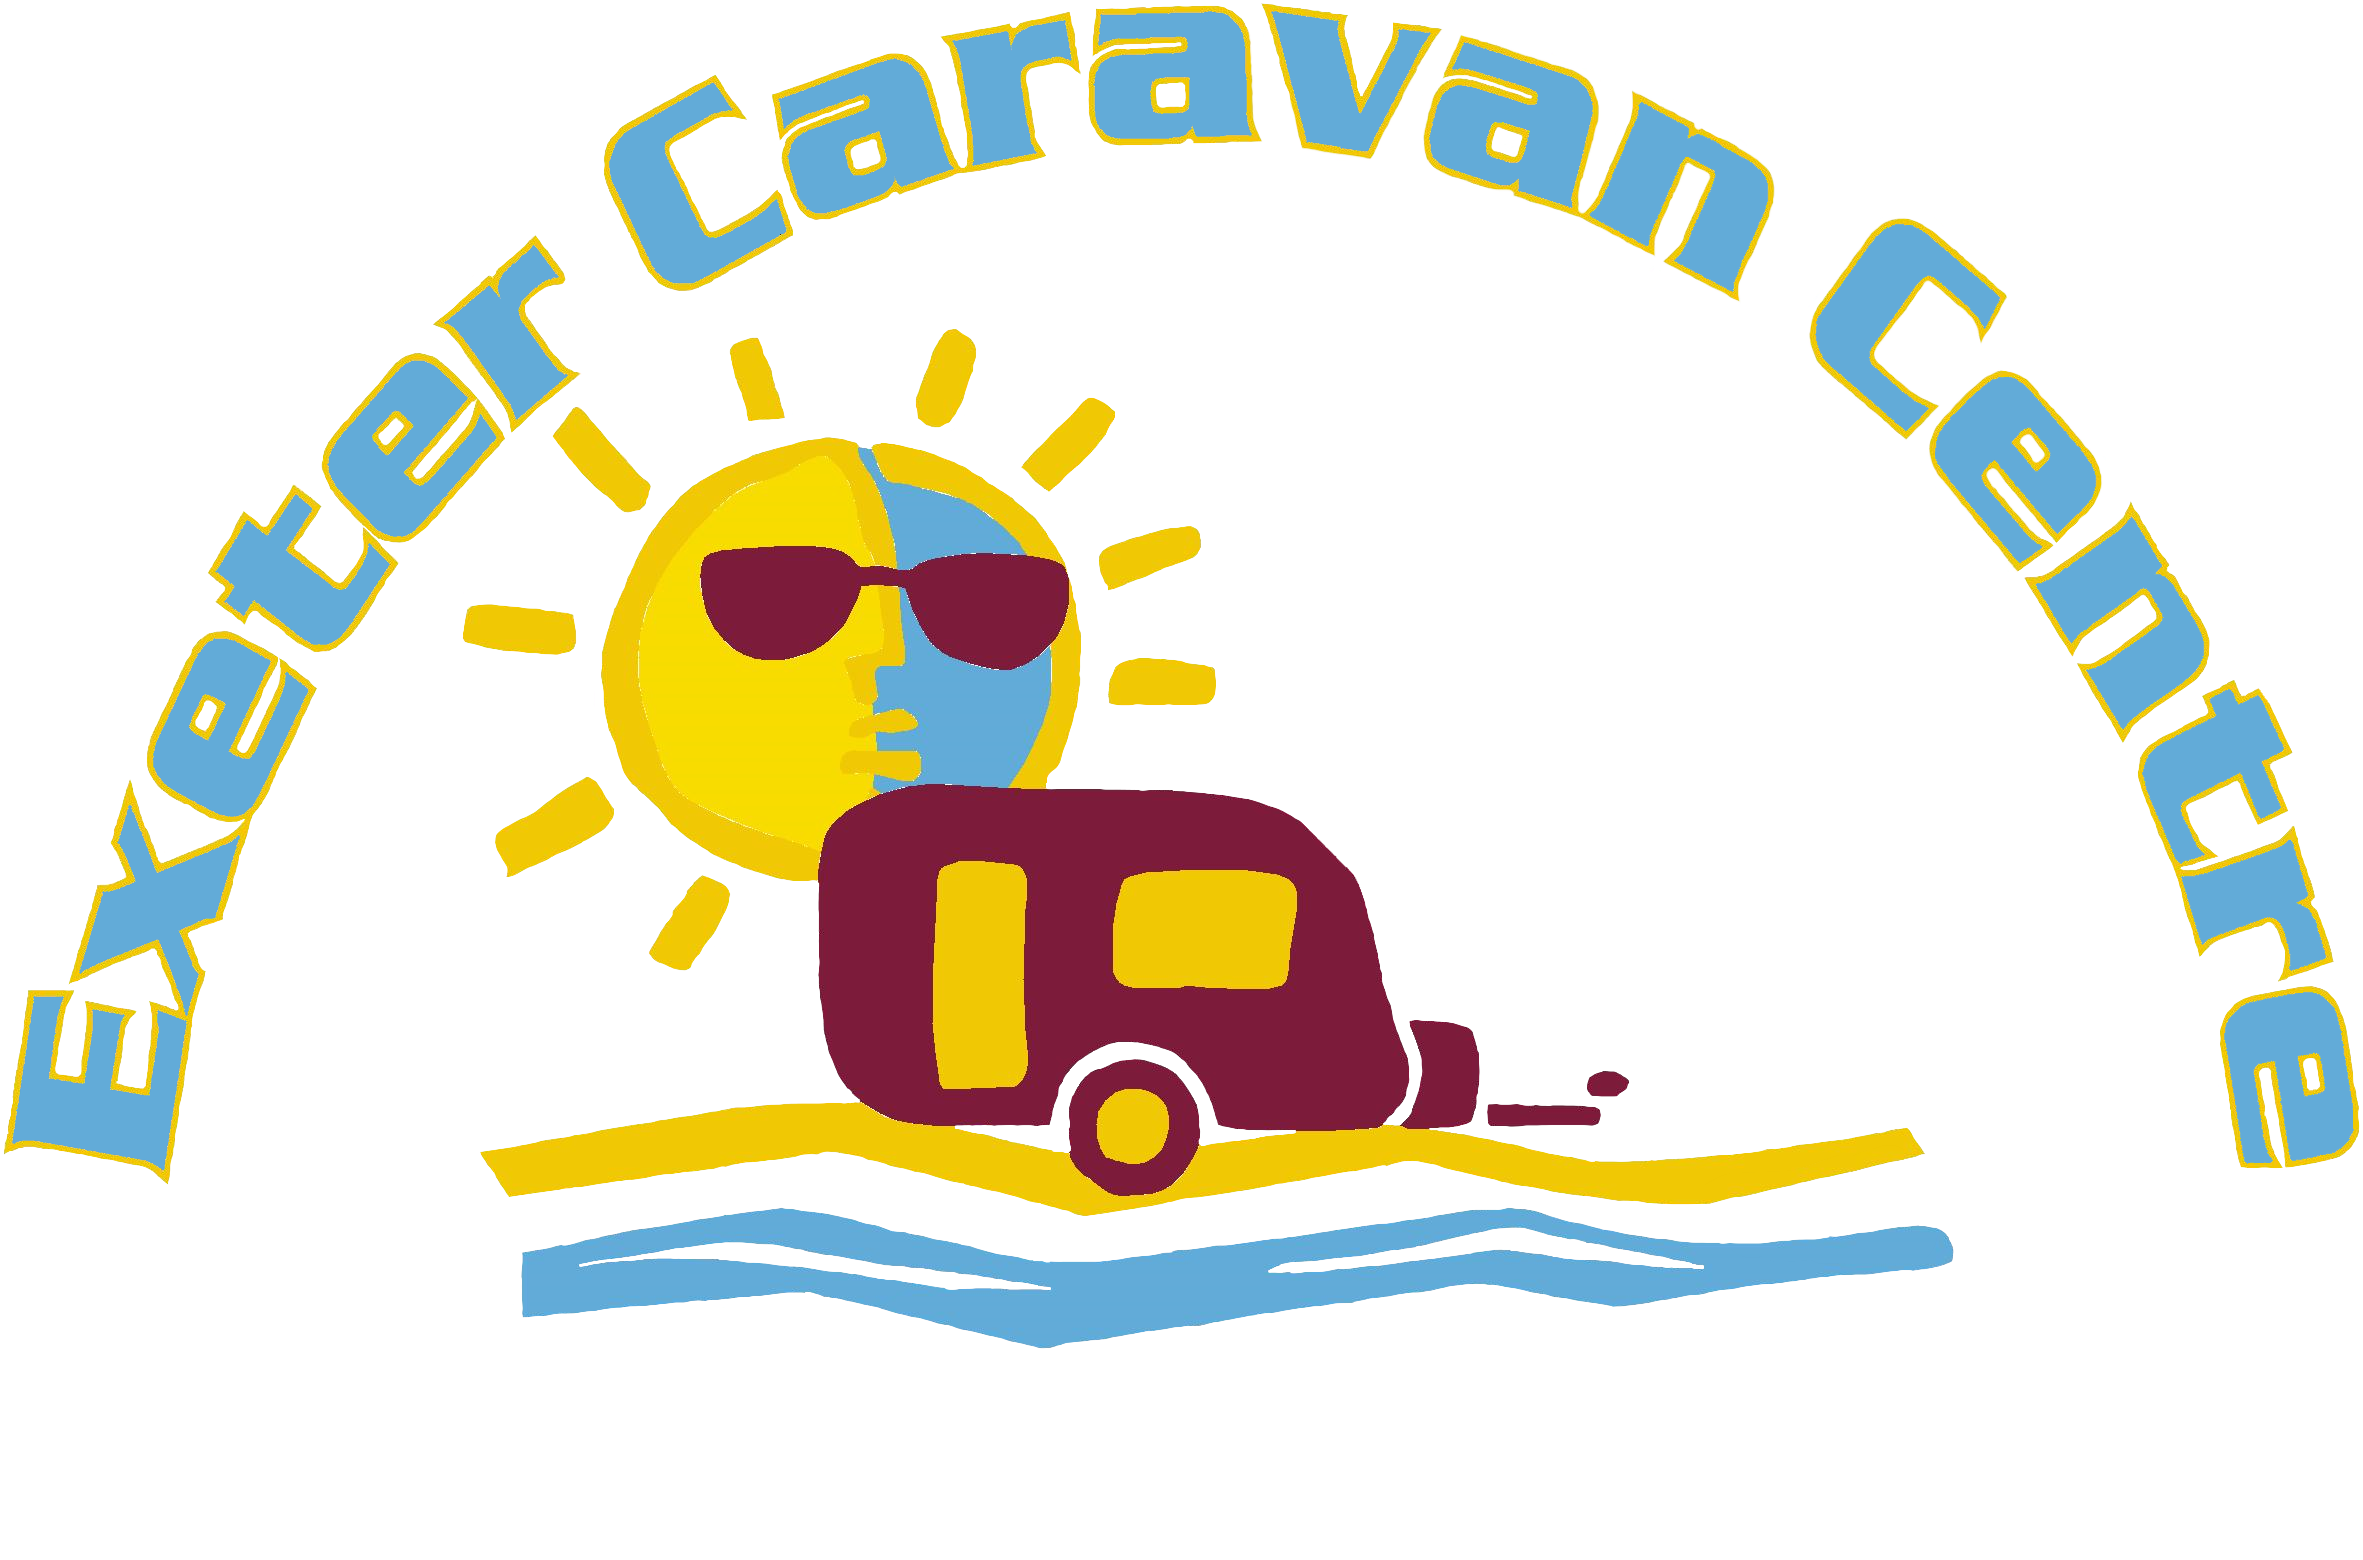 Exeter Caravan Centre logo